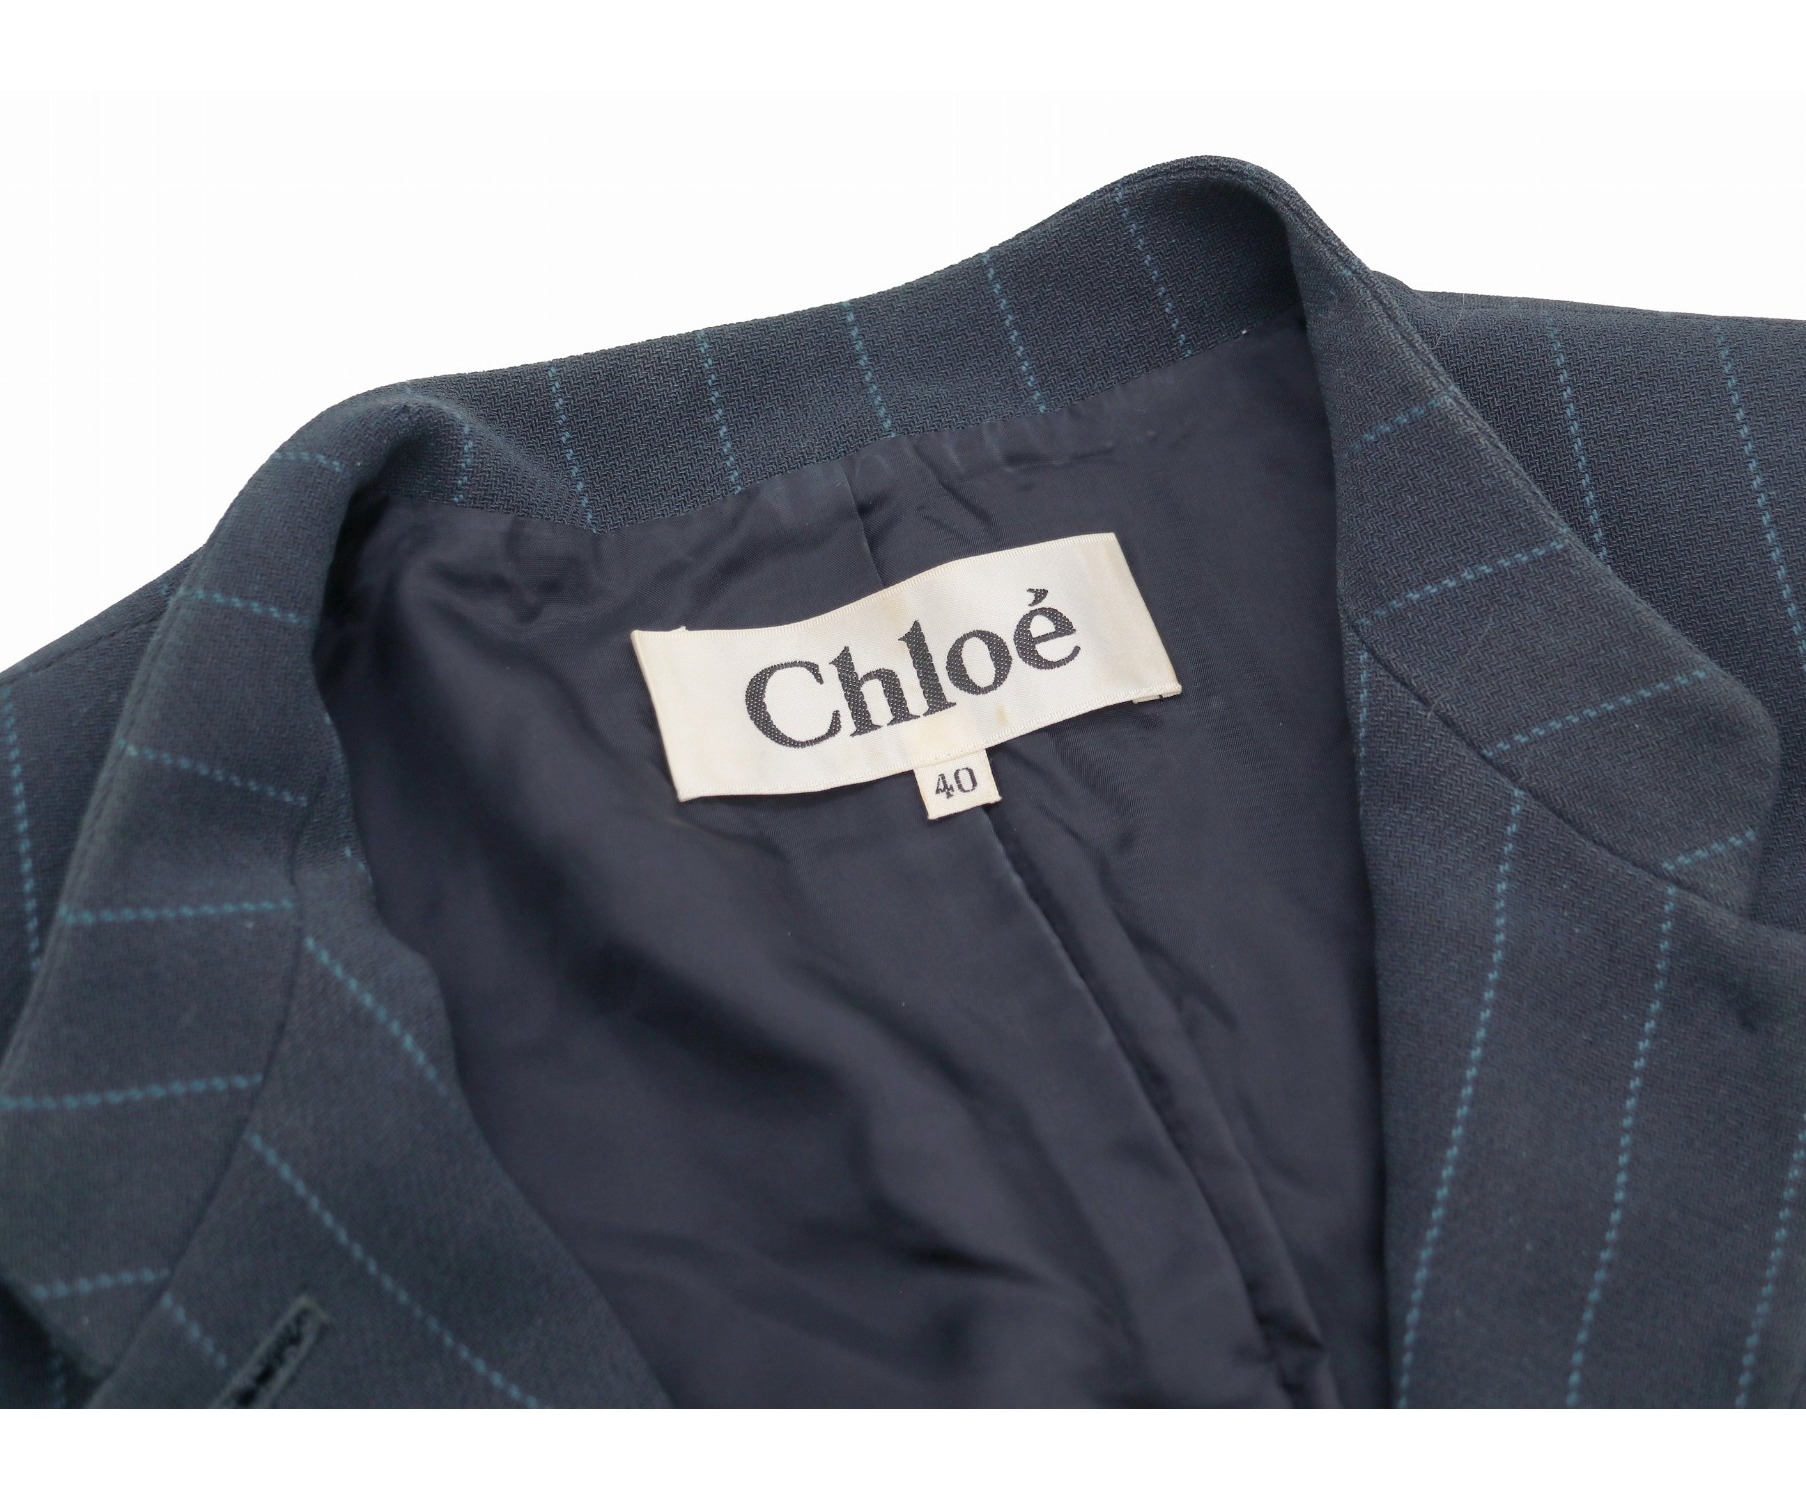 Chloe (クロエ) [OLD]パワーショルダーマオカラージャケット ネイビー サイズ:40表記 ヴィンテージ・アーカイブクロエ